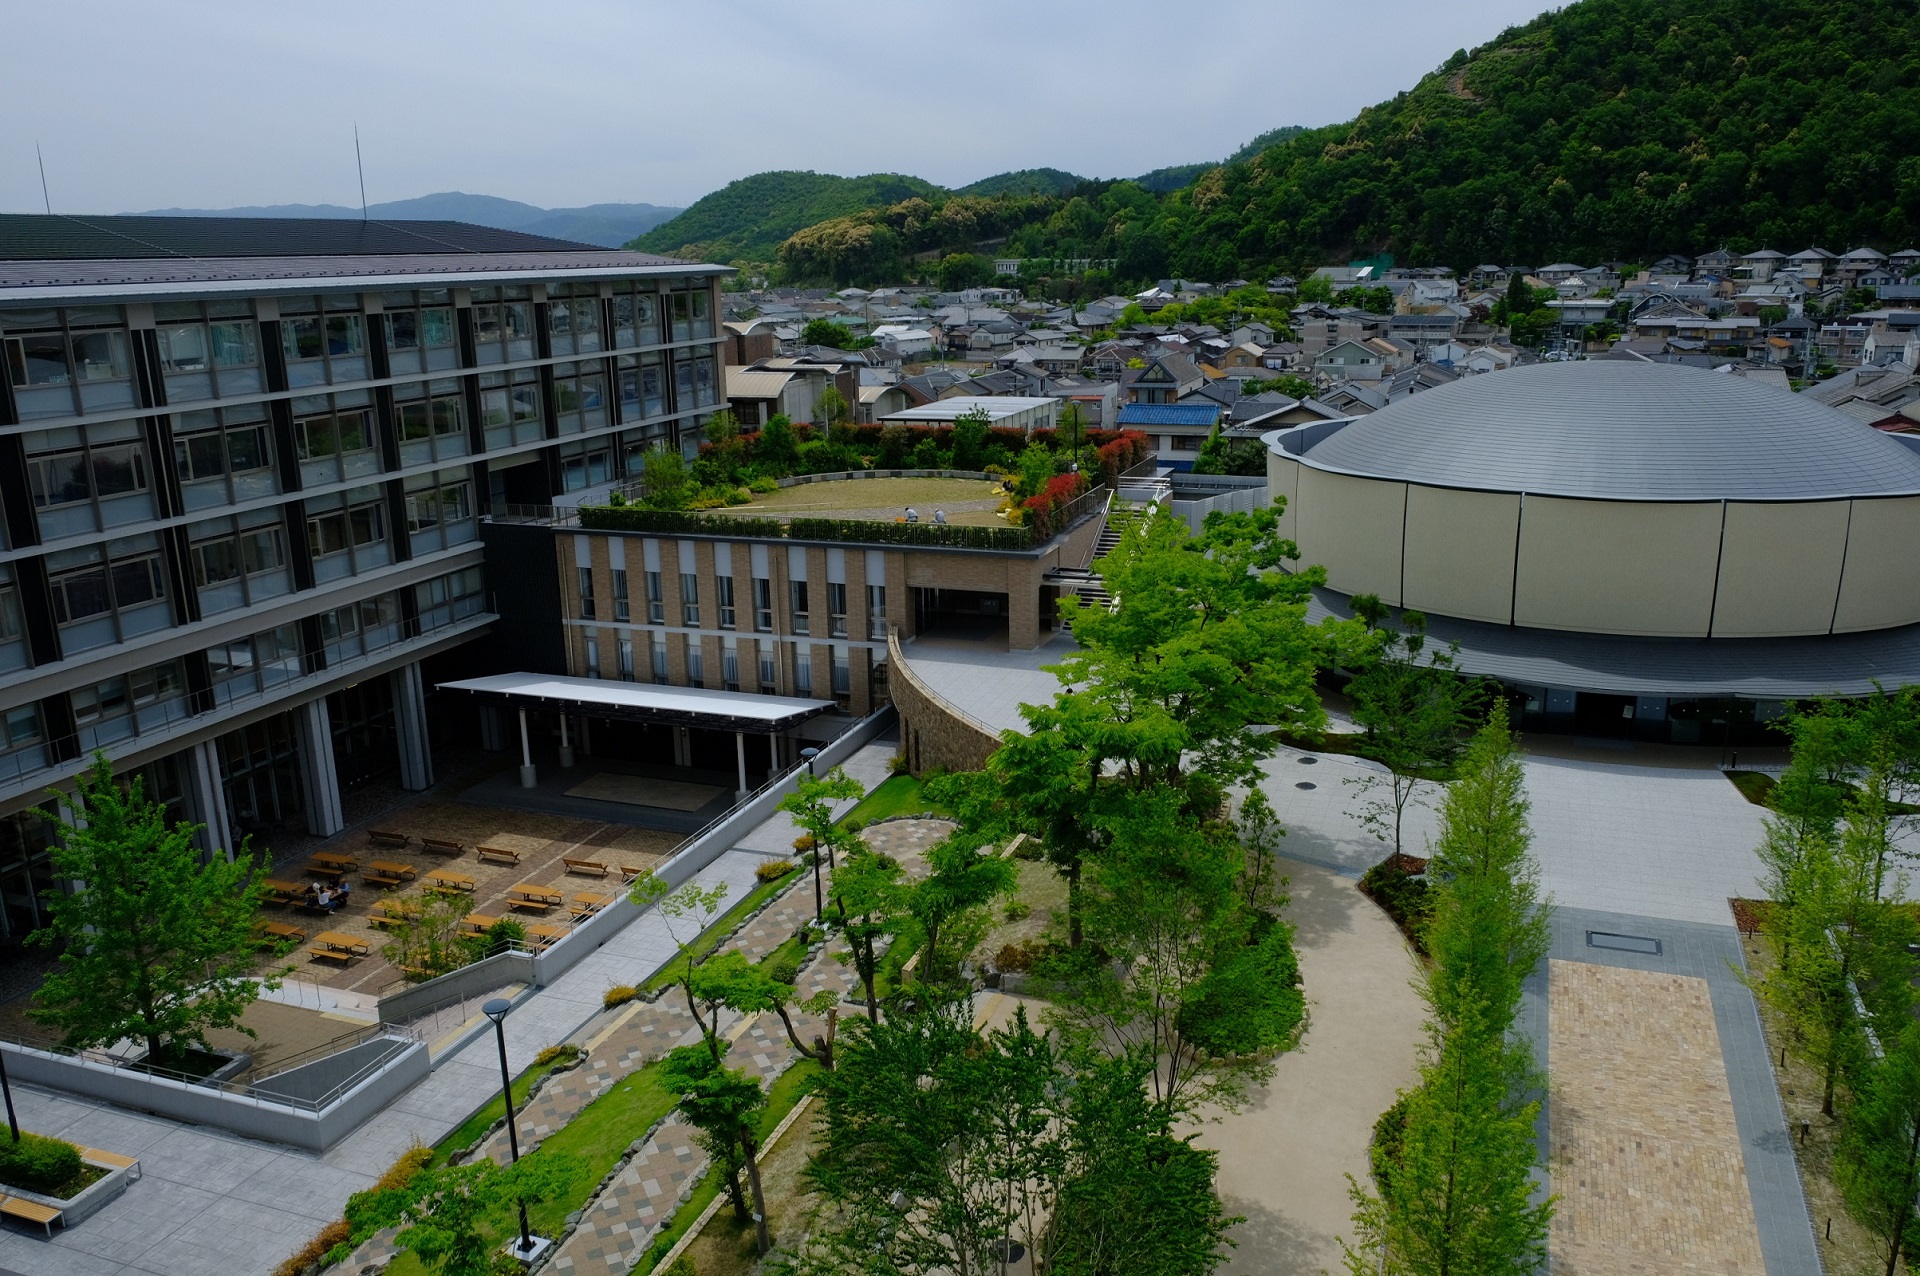 佛教大学紫野キャンパスリニューアル完成落慶式を5月20日に挙行